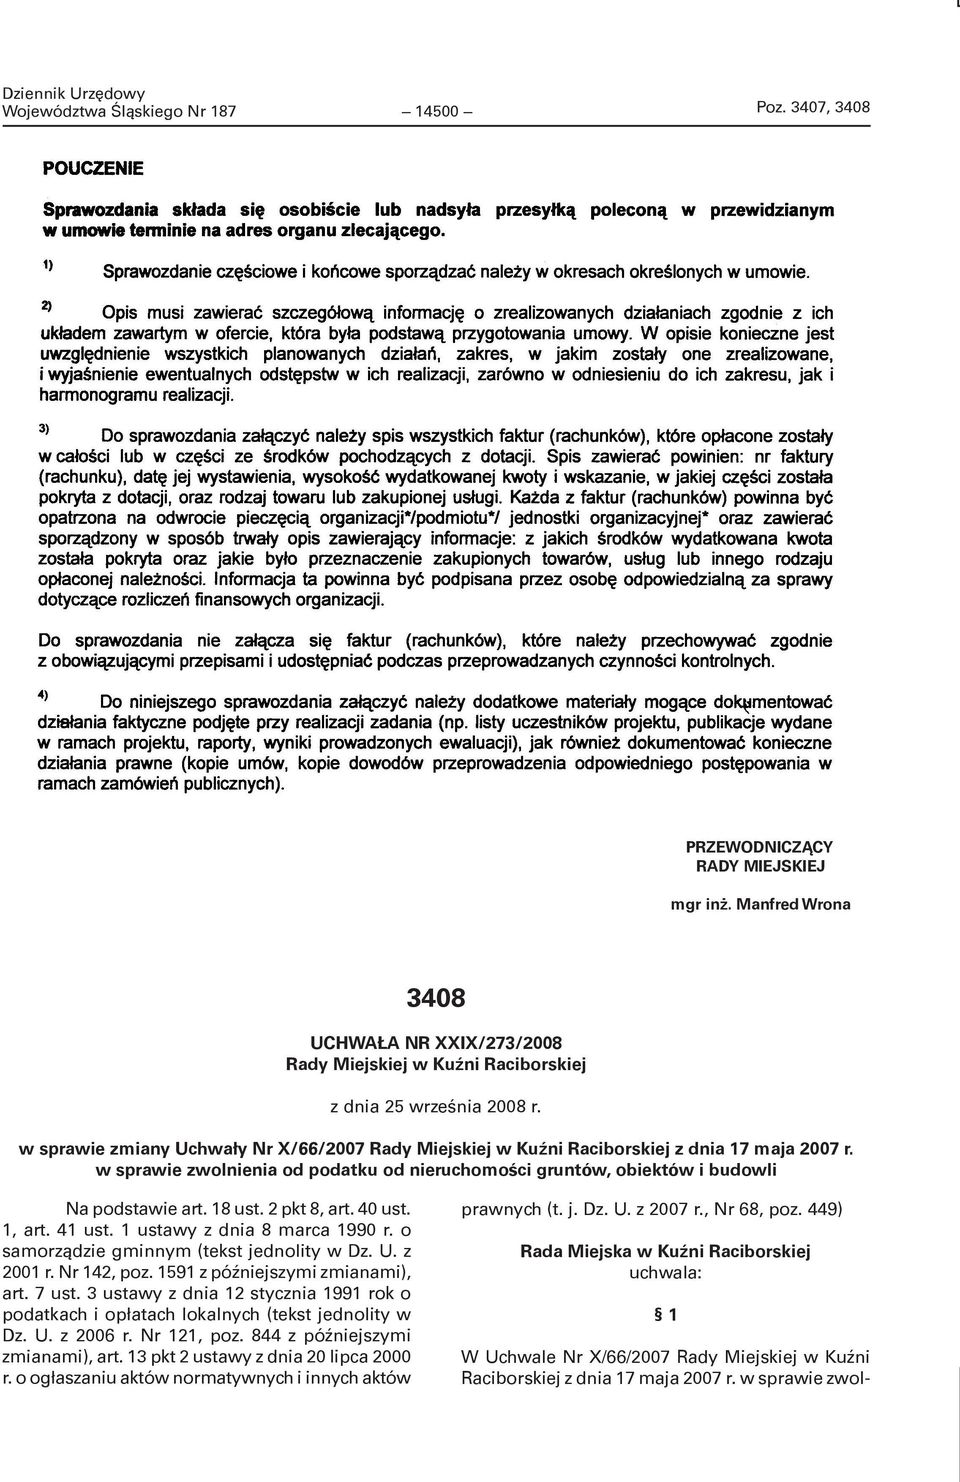 w sprawie zmiany Uchwały Nr X/66/2007 Rady Miejskiej w Kuźni Raciborskiej z dnia 17 maja 2007 r. w sprawie zwolnienia od podatku od nieruchomości gruntów, obiektów i budowli Na podstawie art. 18 ust.